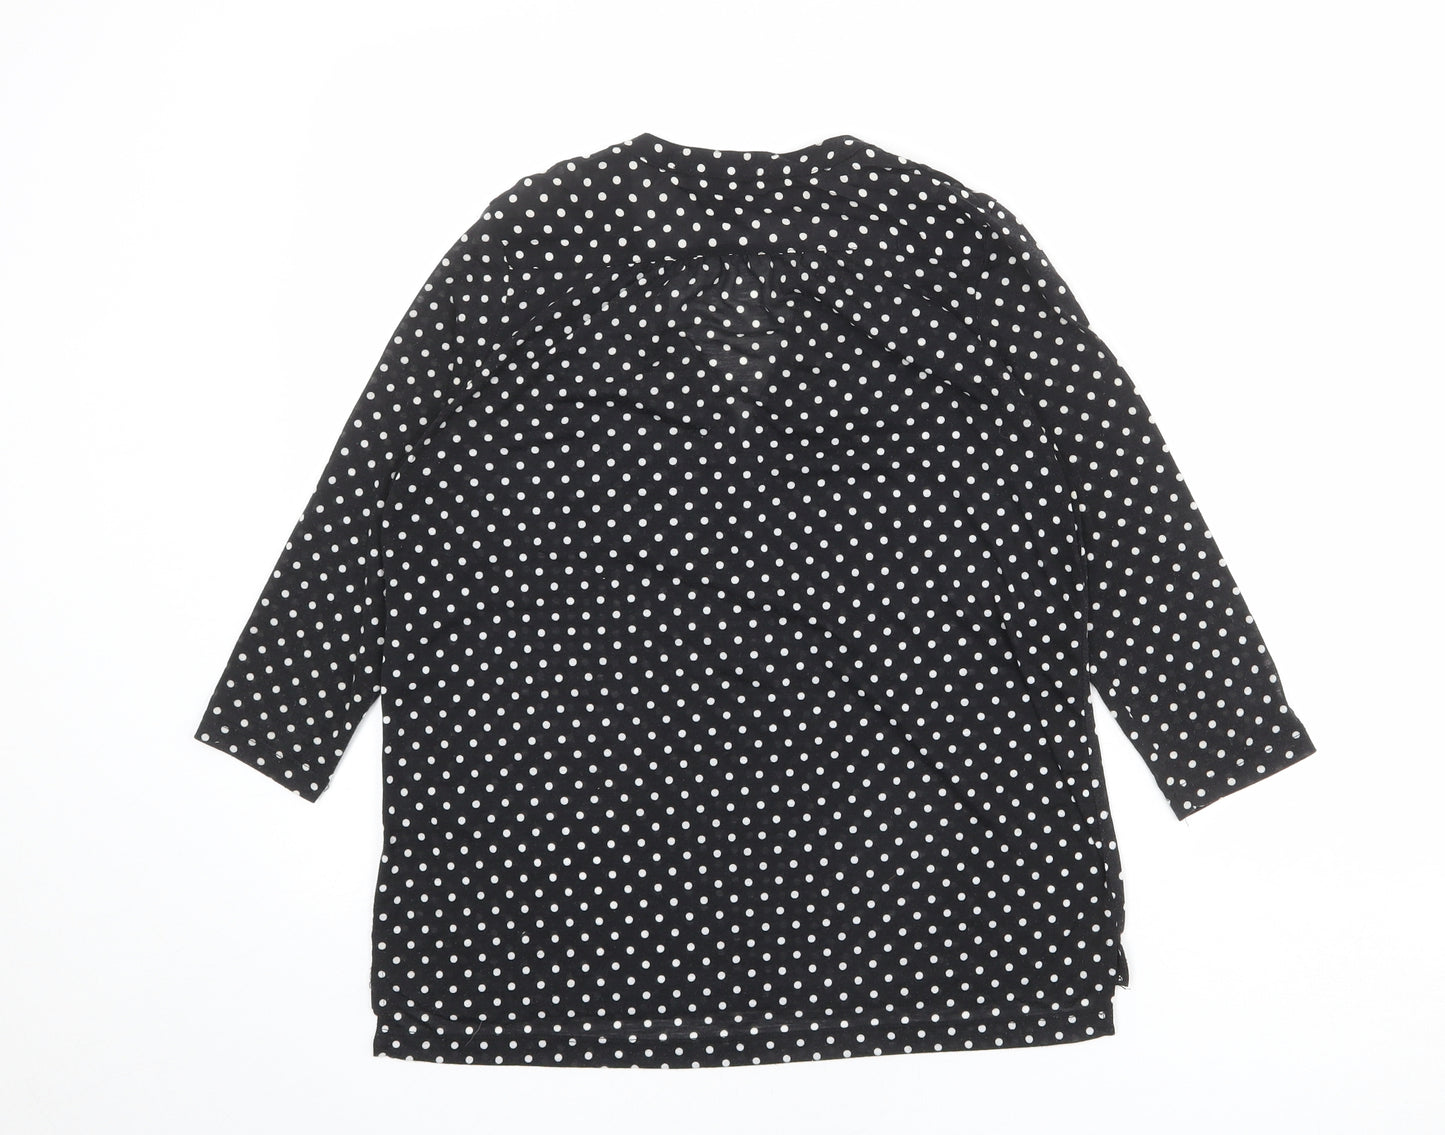 H&M Womens Black Polka Dot Polyester Basic Blouse Size S V-Neck